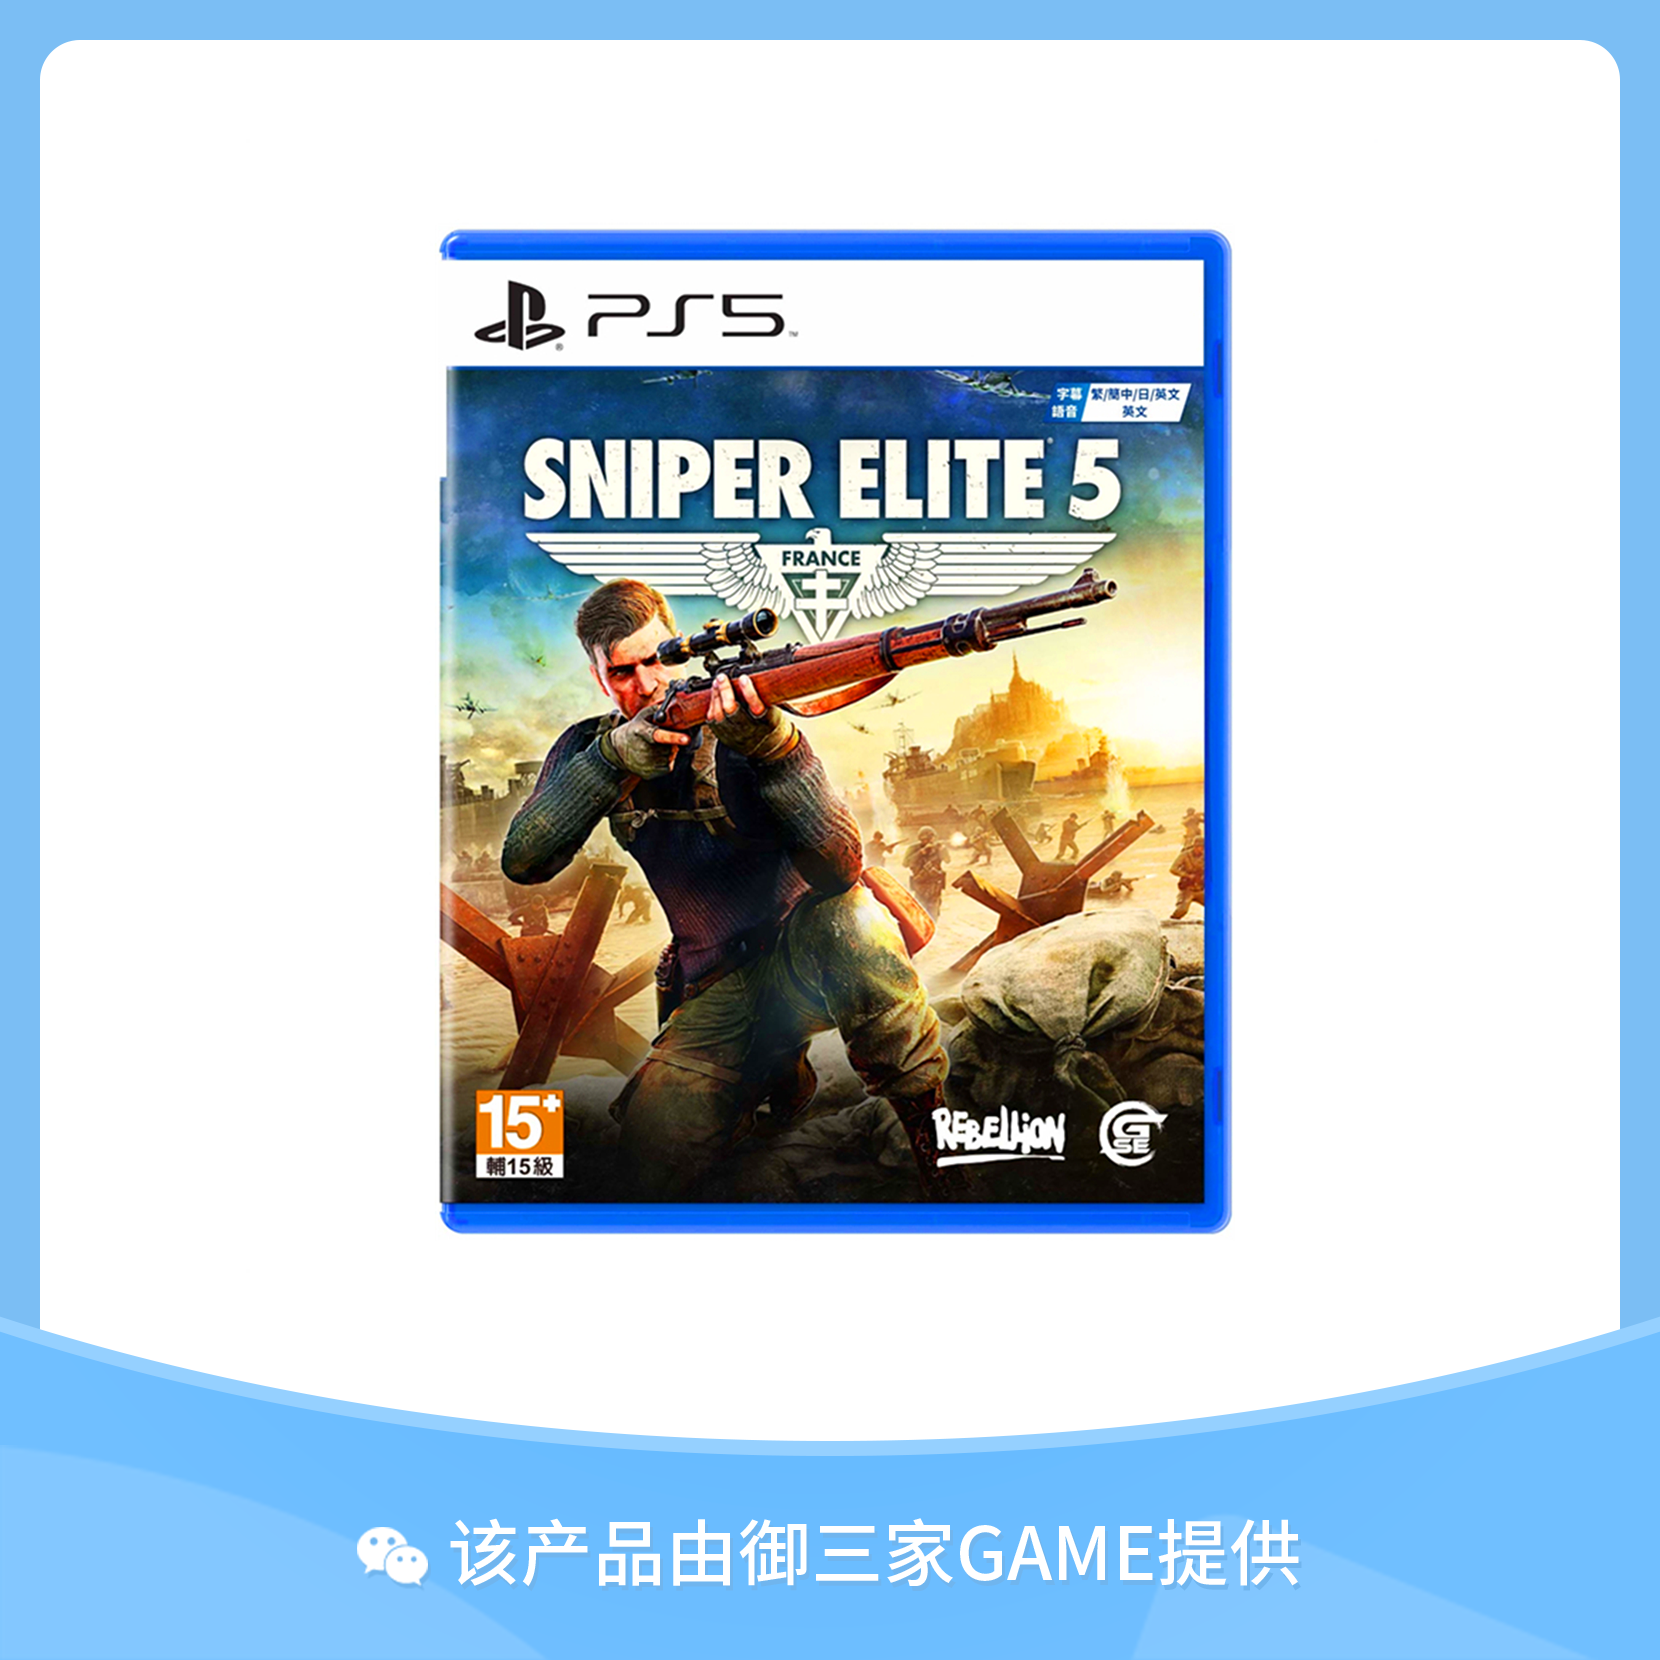 索尼PS5游戏 狙击精英5 Sniper Elite 5 中文